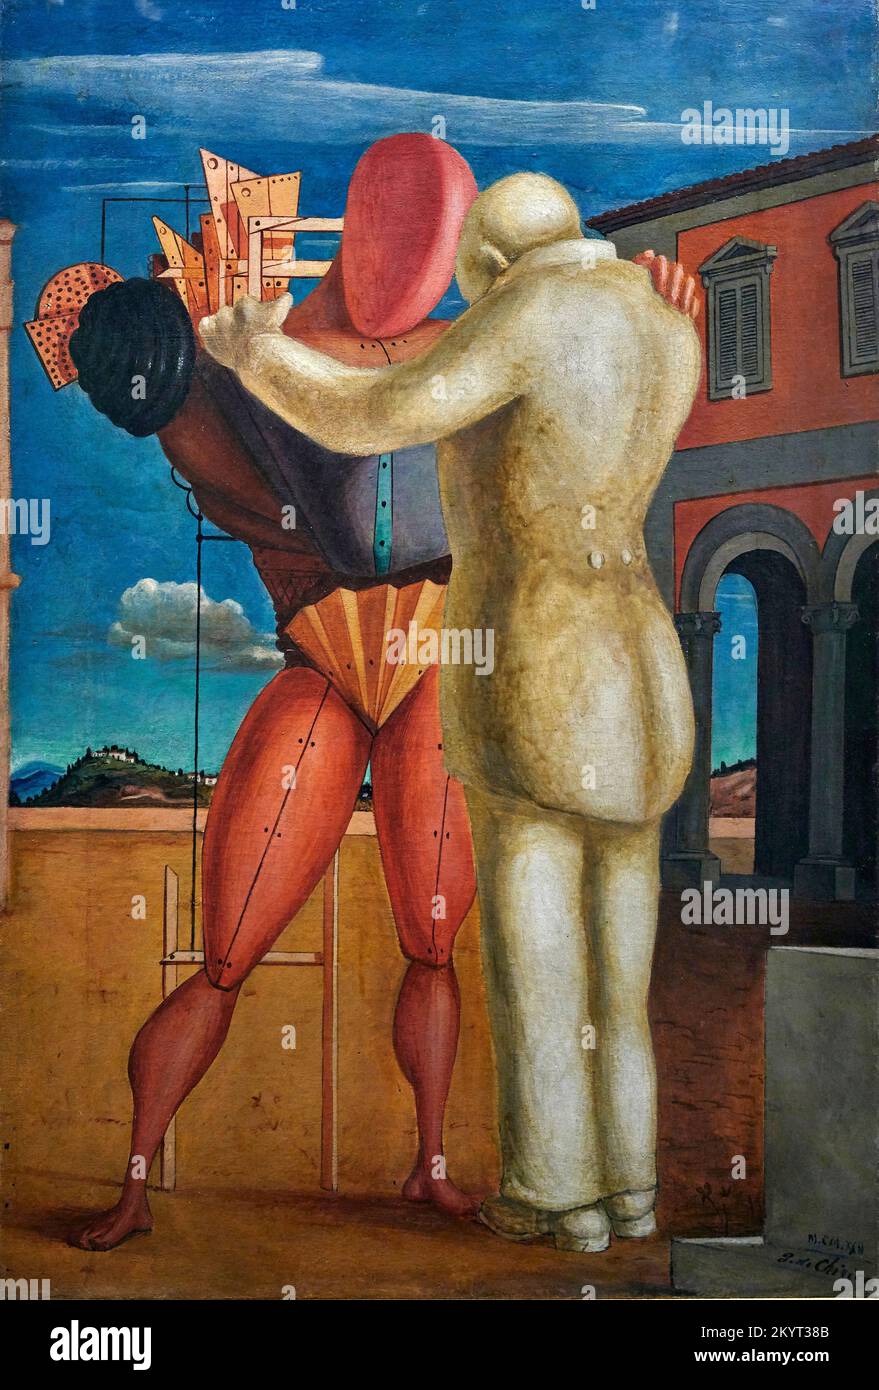 Il filgiol prodigo - olio su tela - Giorgio de Chirico - 1922 - Milano, Museo del Novecento Banque D'Images